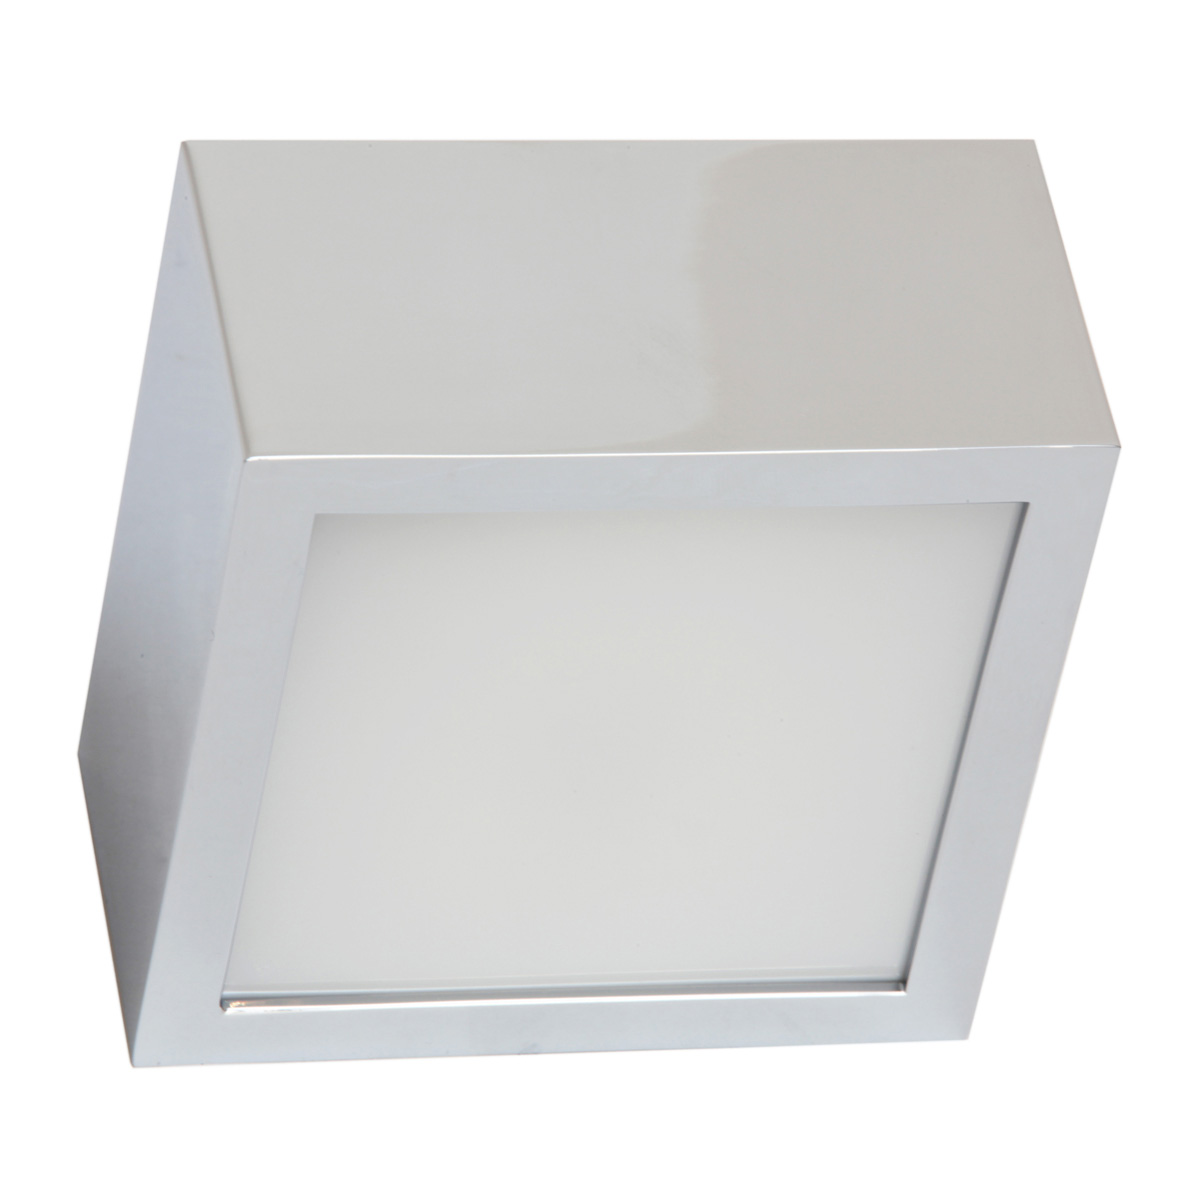 KARREE LED Exklusive Badezimmer-Deckenlampe IP44 10/18 cm: Badleuchte, Ausführung in Chrom, Modell 1